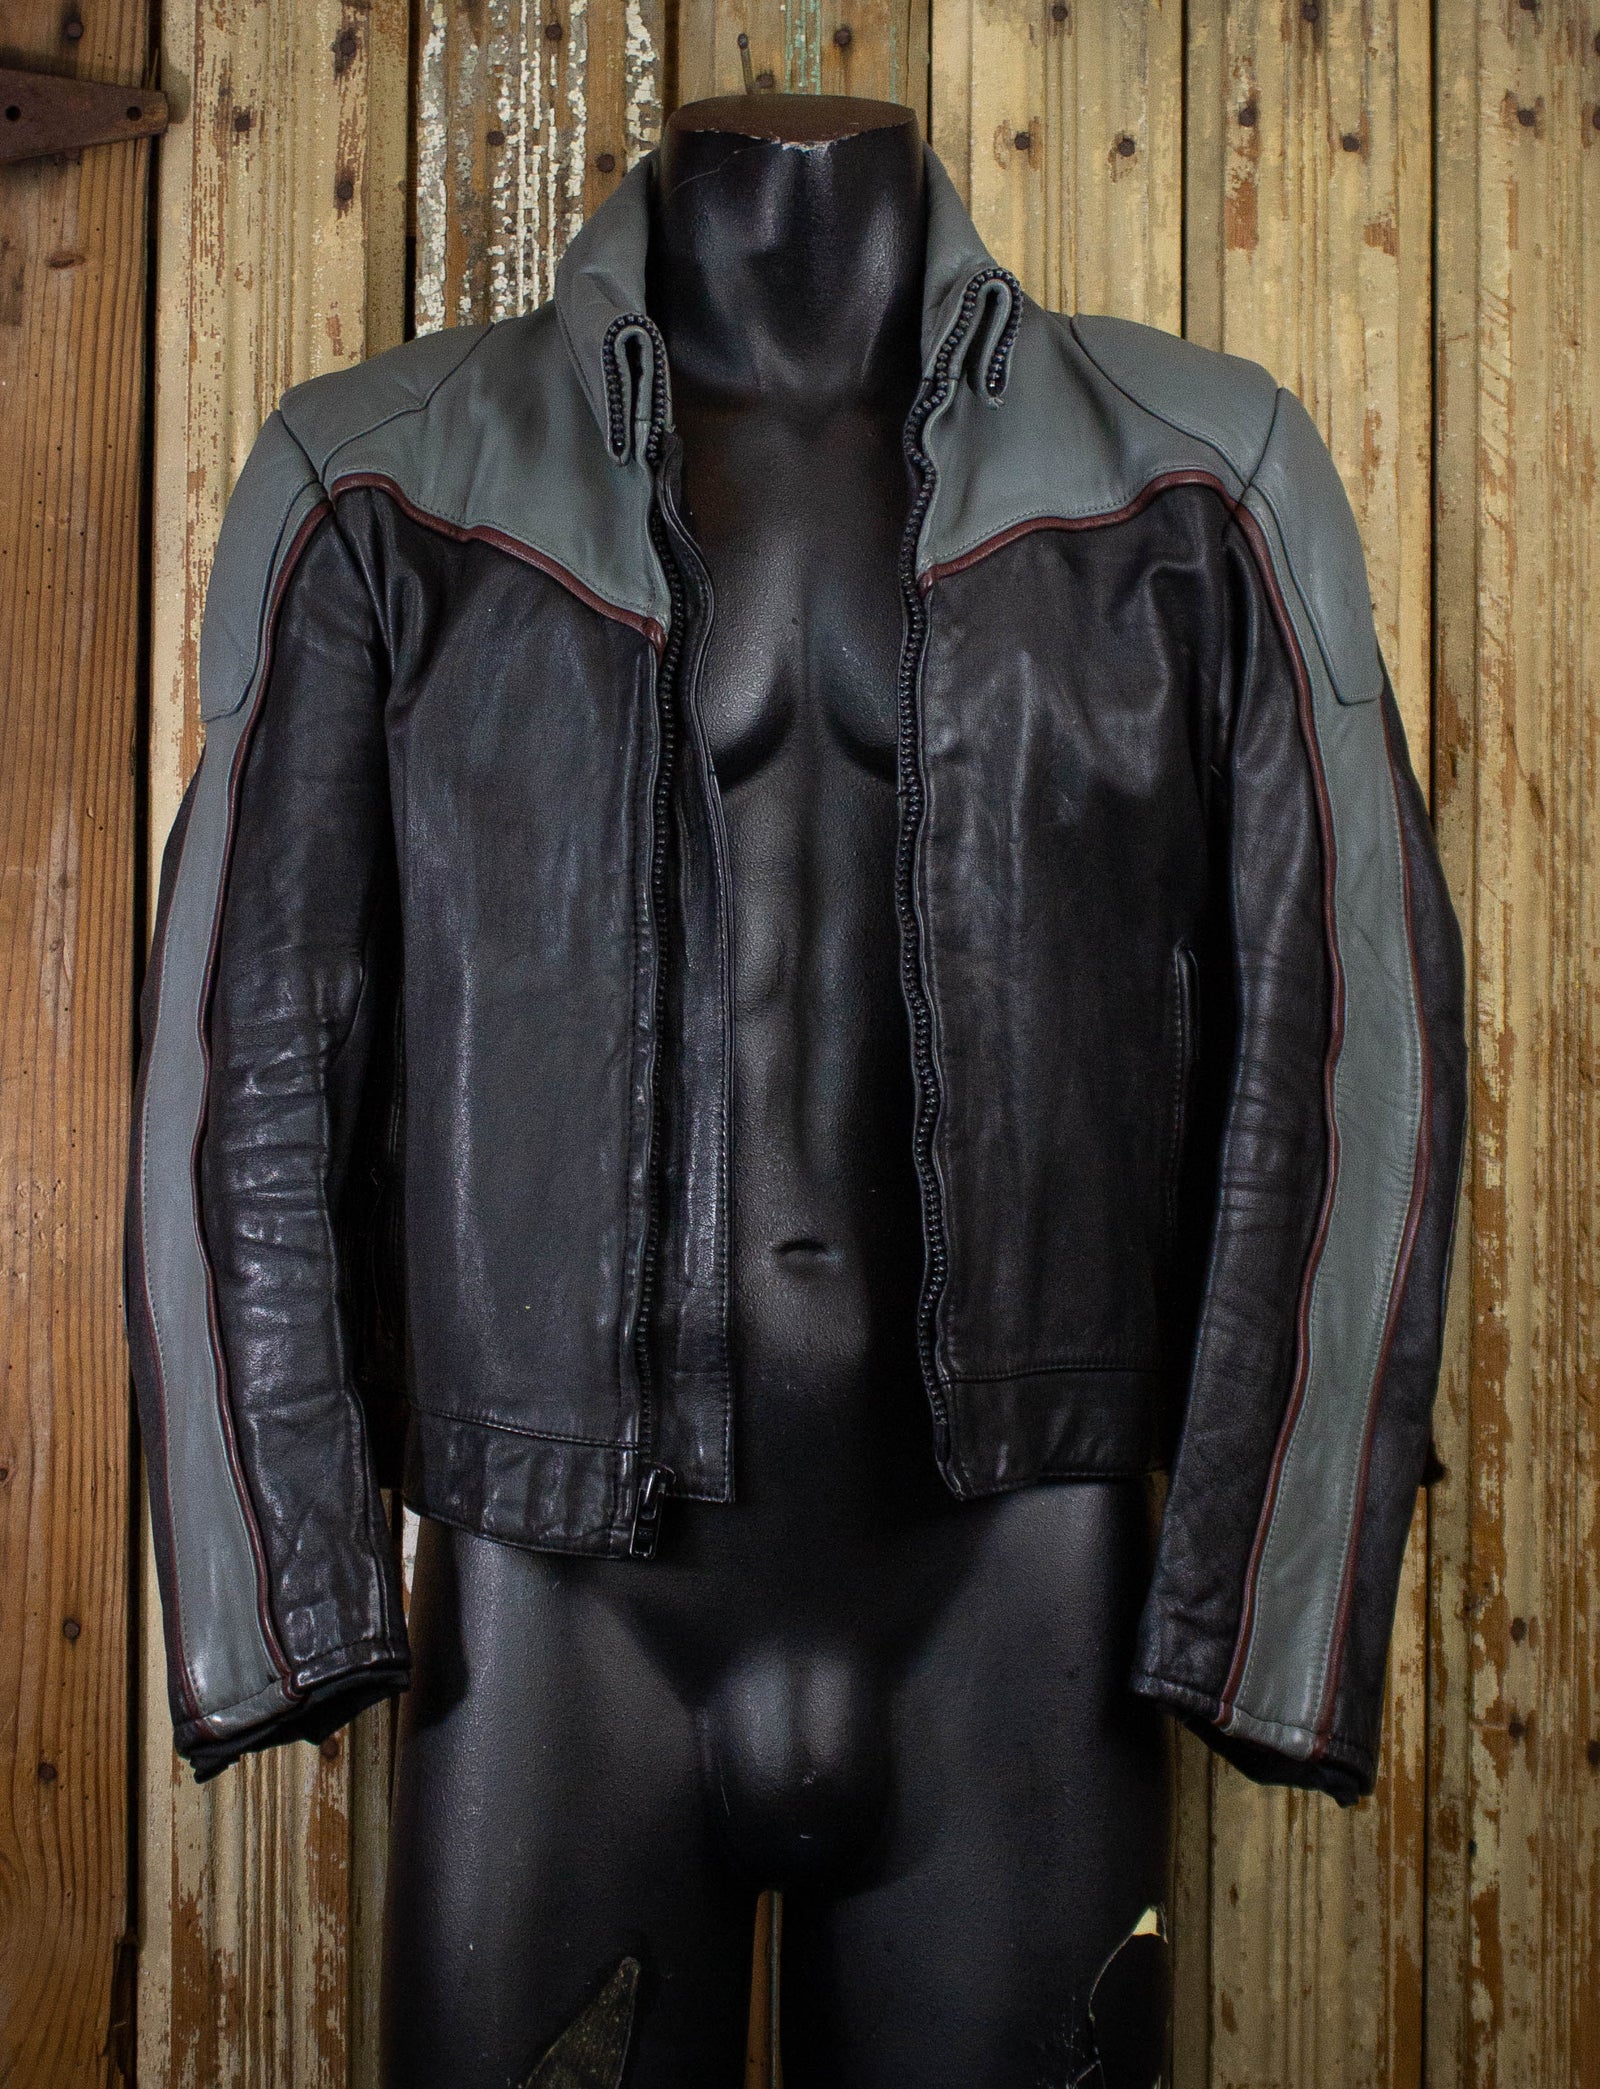 Vintage Tour Lion Harley Davidson Leather Biker Jacket 90s Black/Gray Small